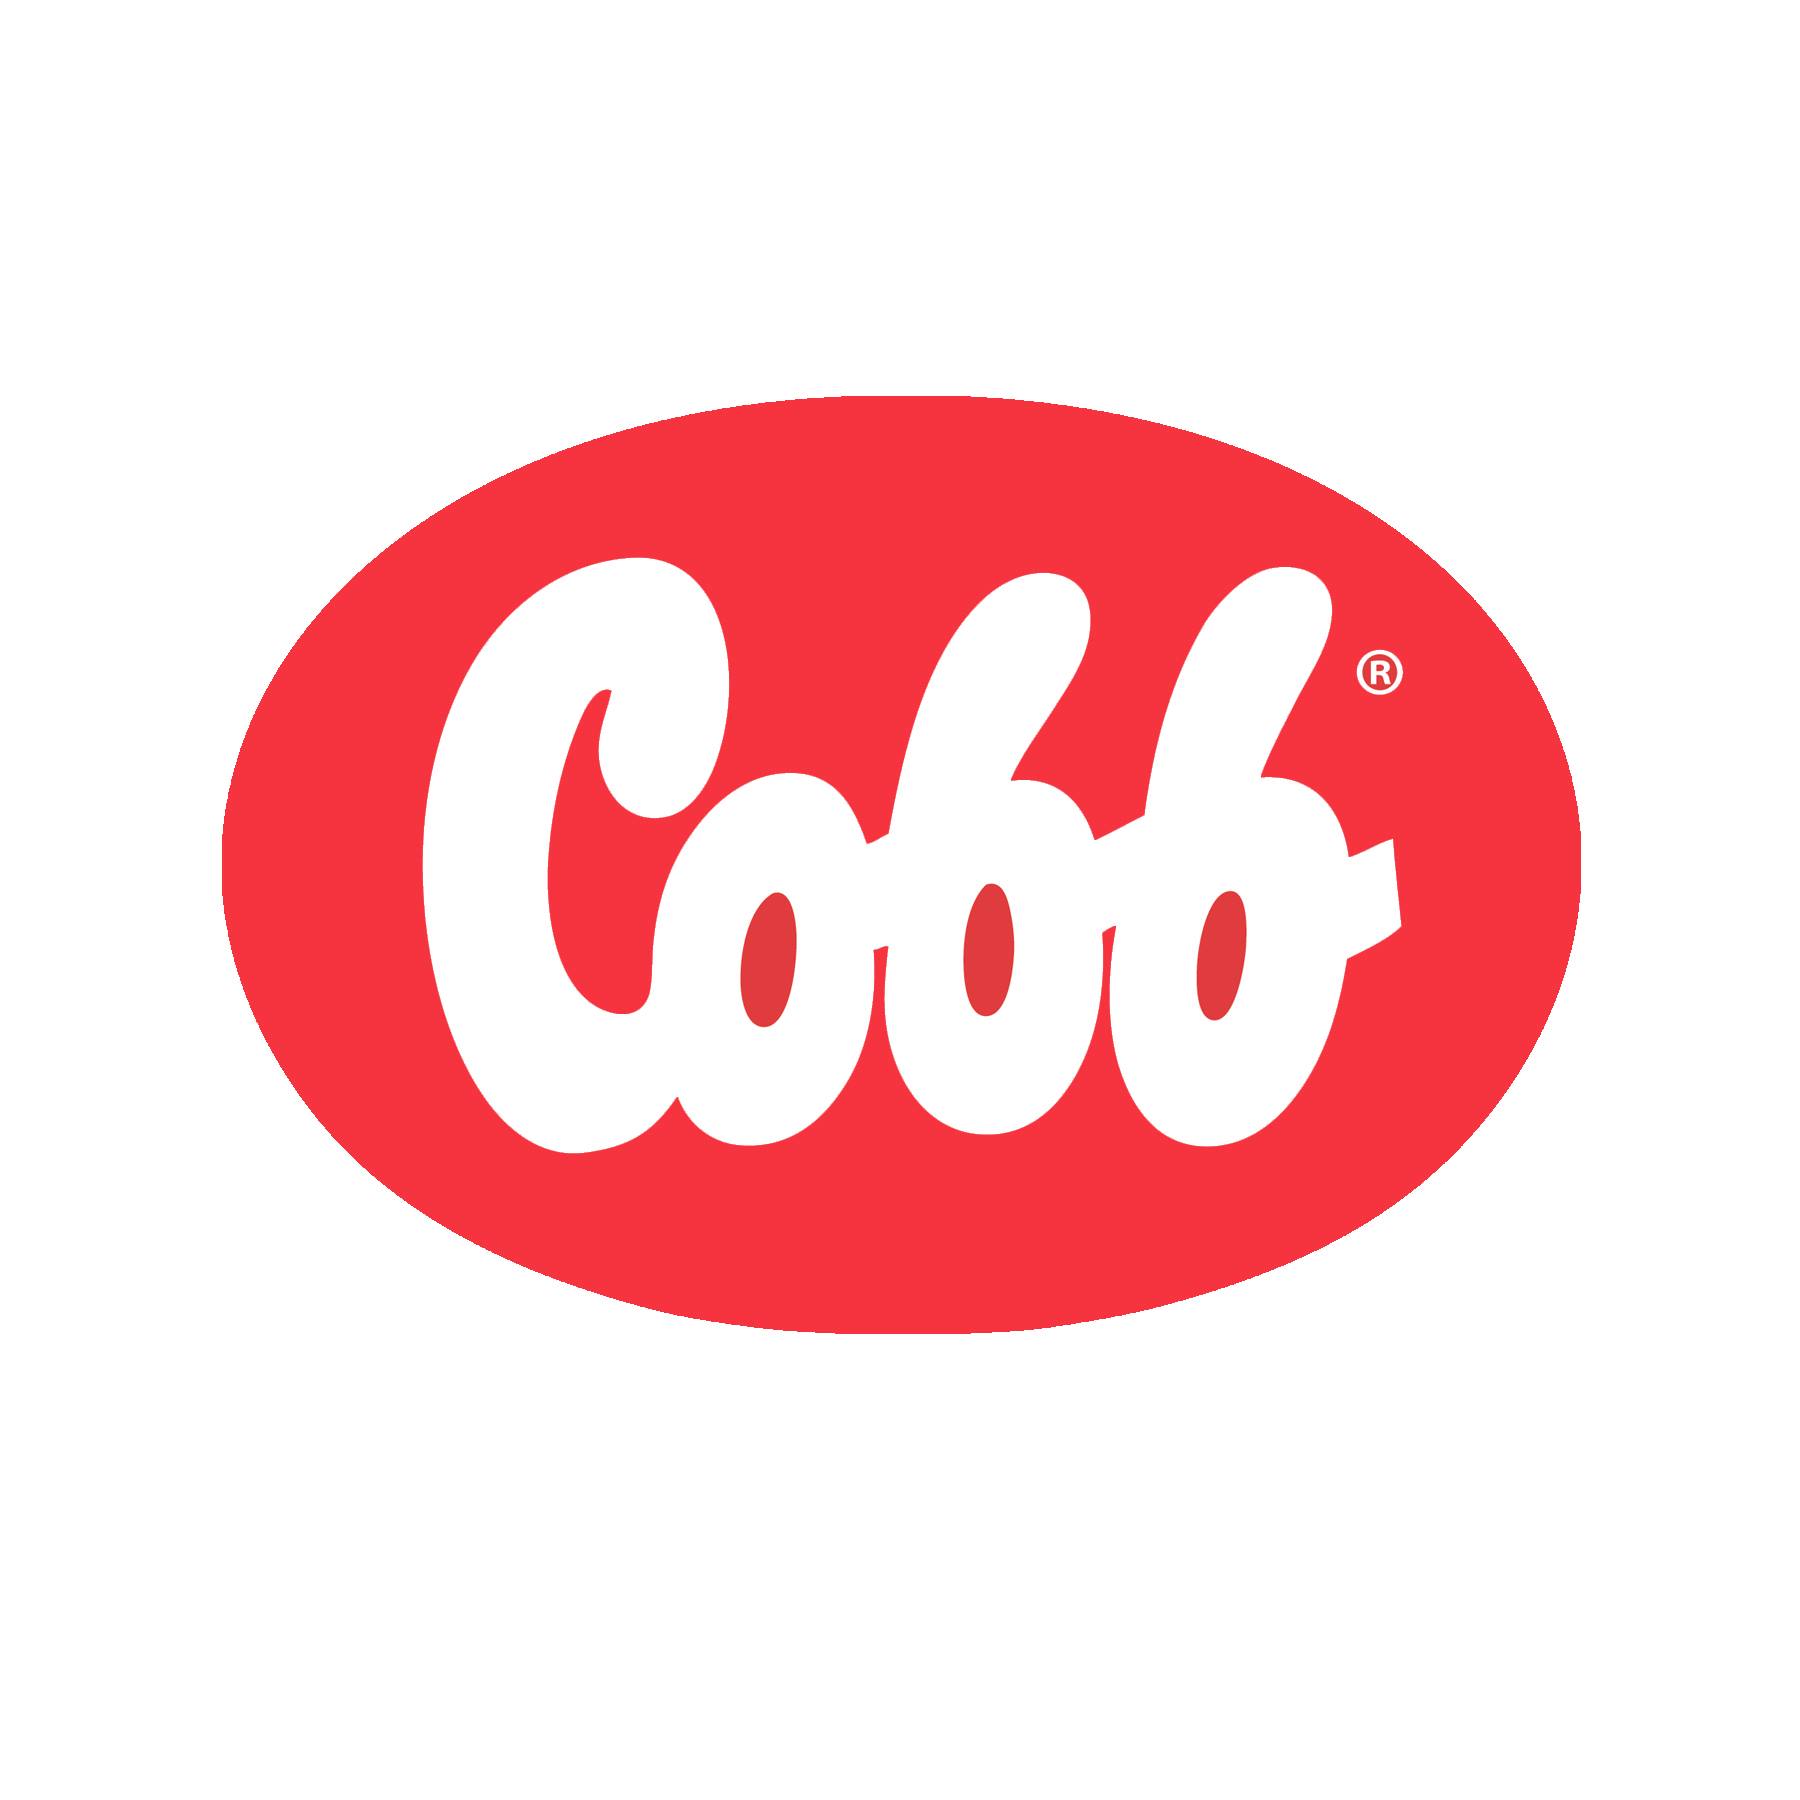 Company logo of Cobb-Vantress Inc